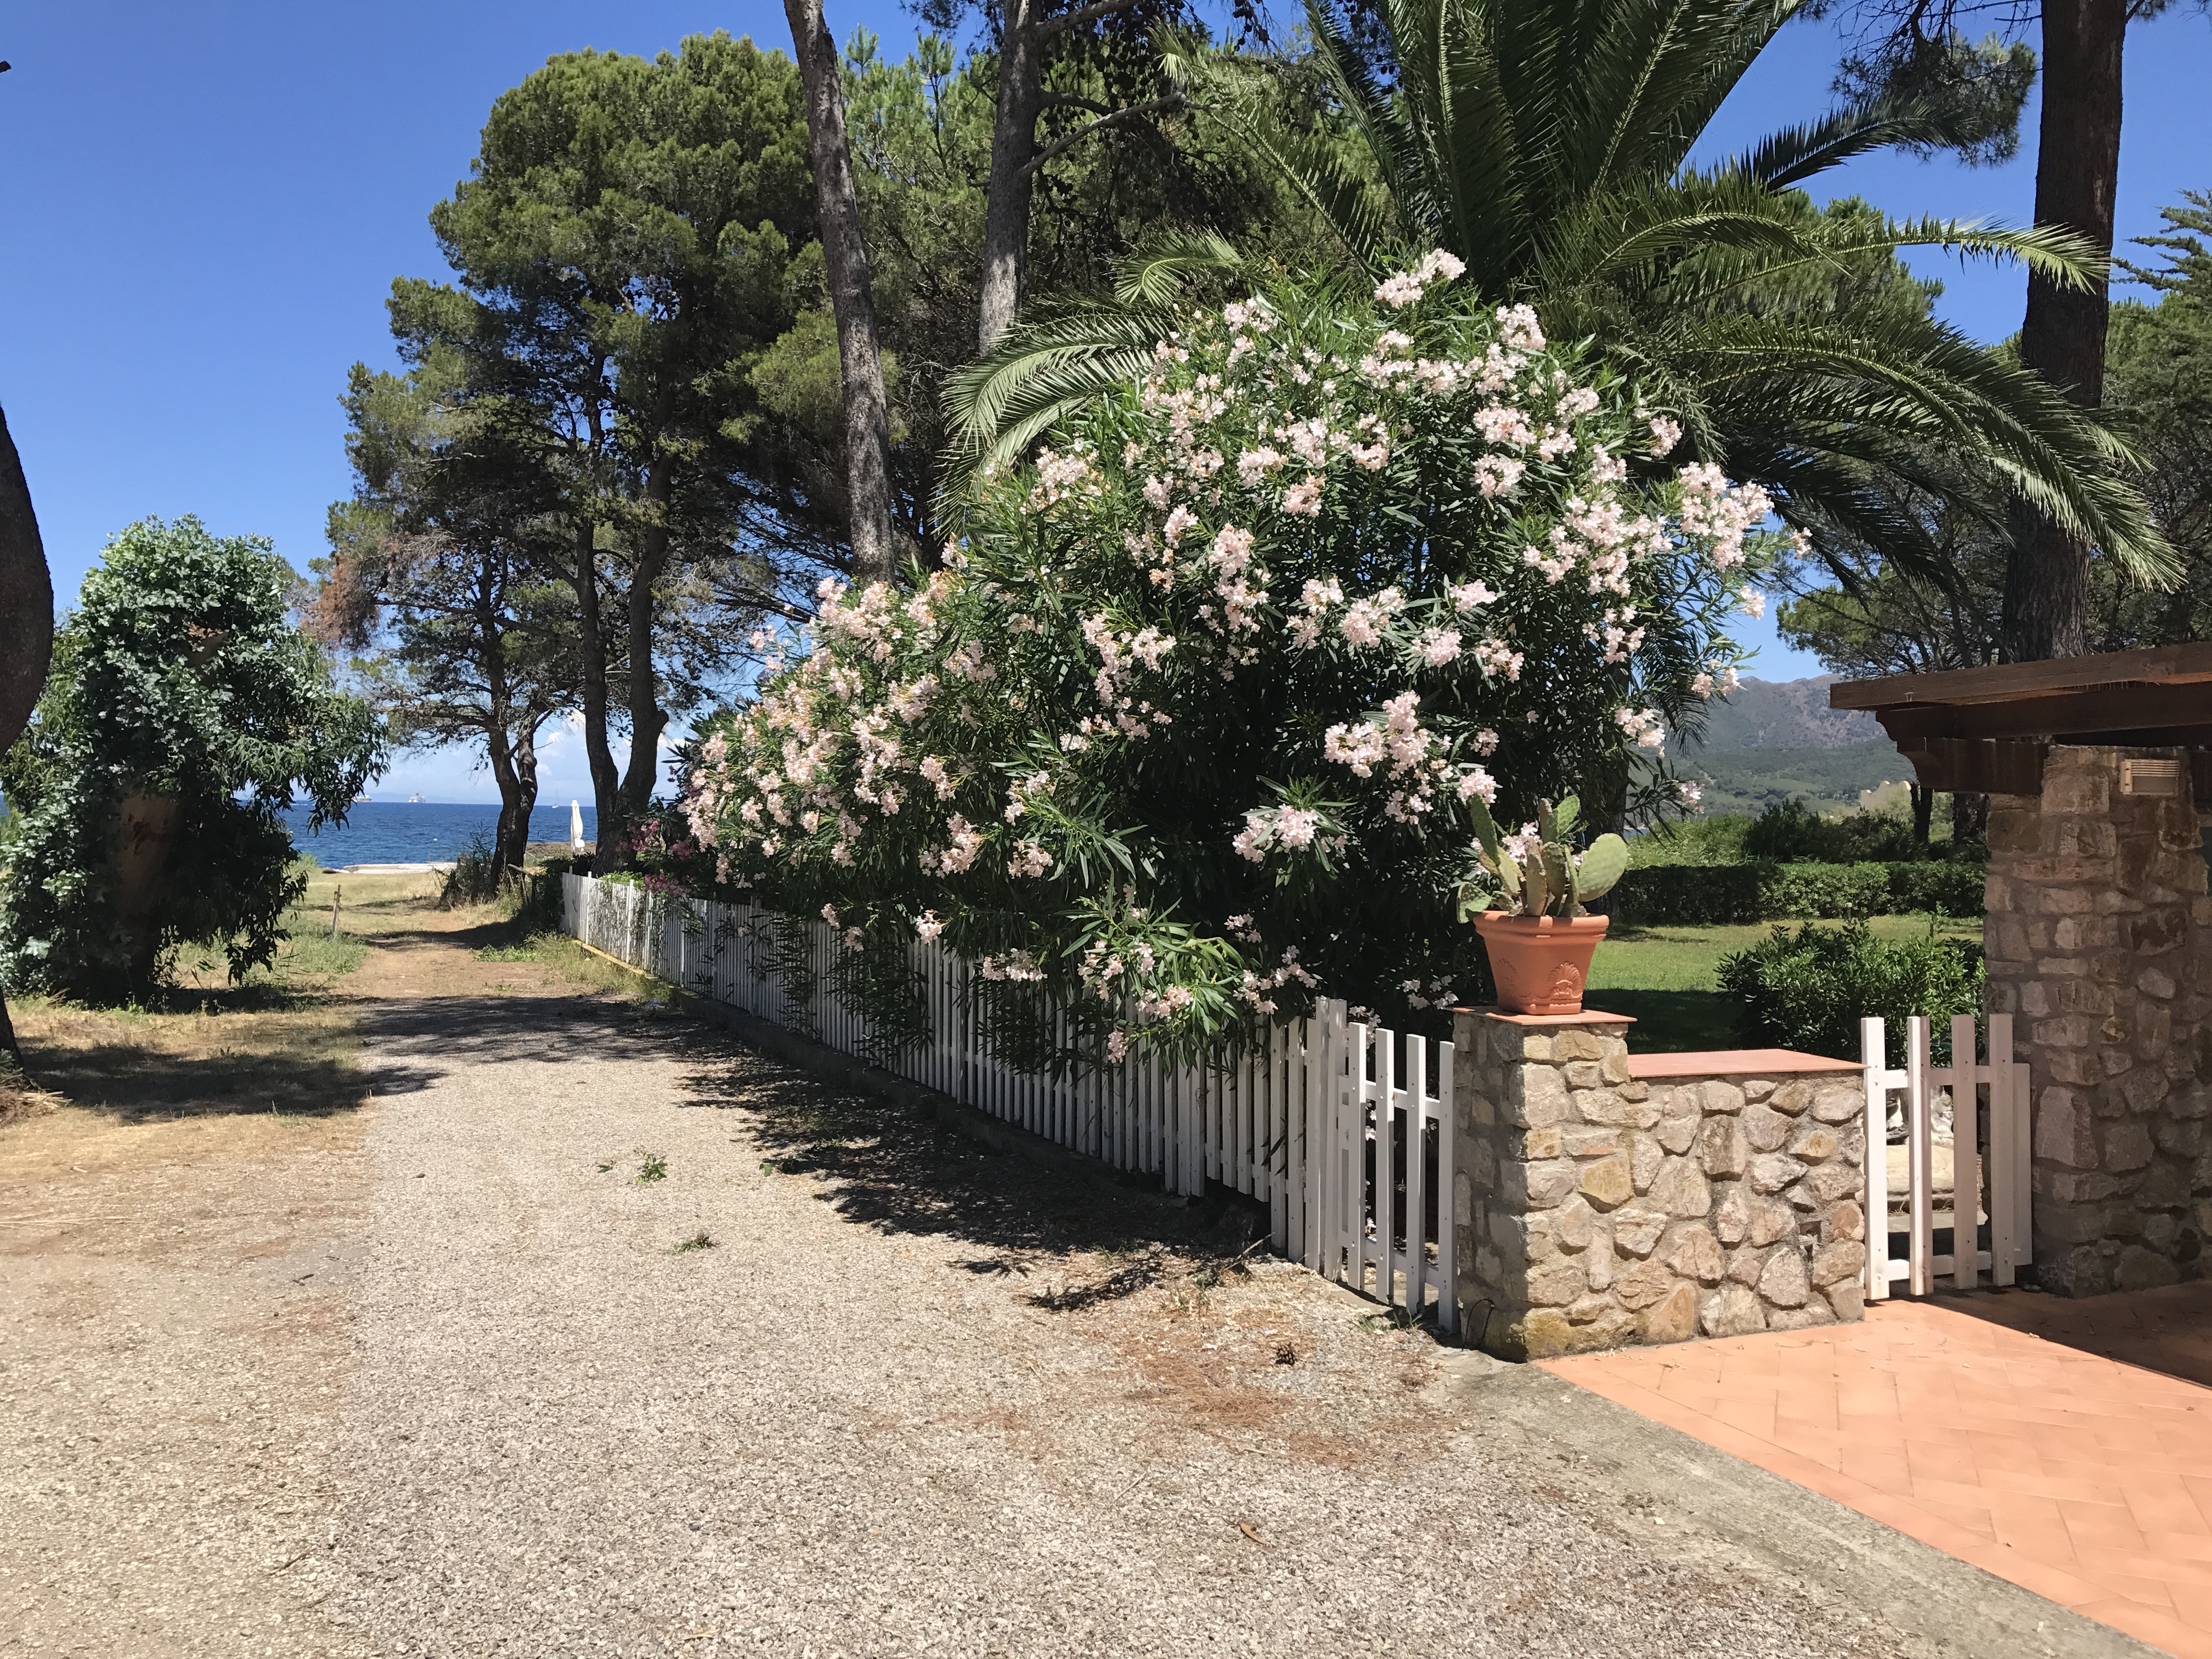 Villa mit Garten mit Blick auf das Meer - Insel Elba